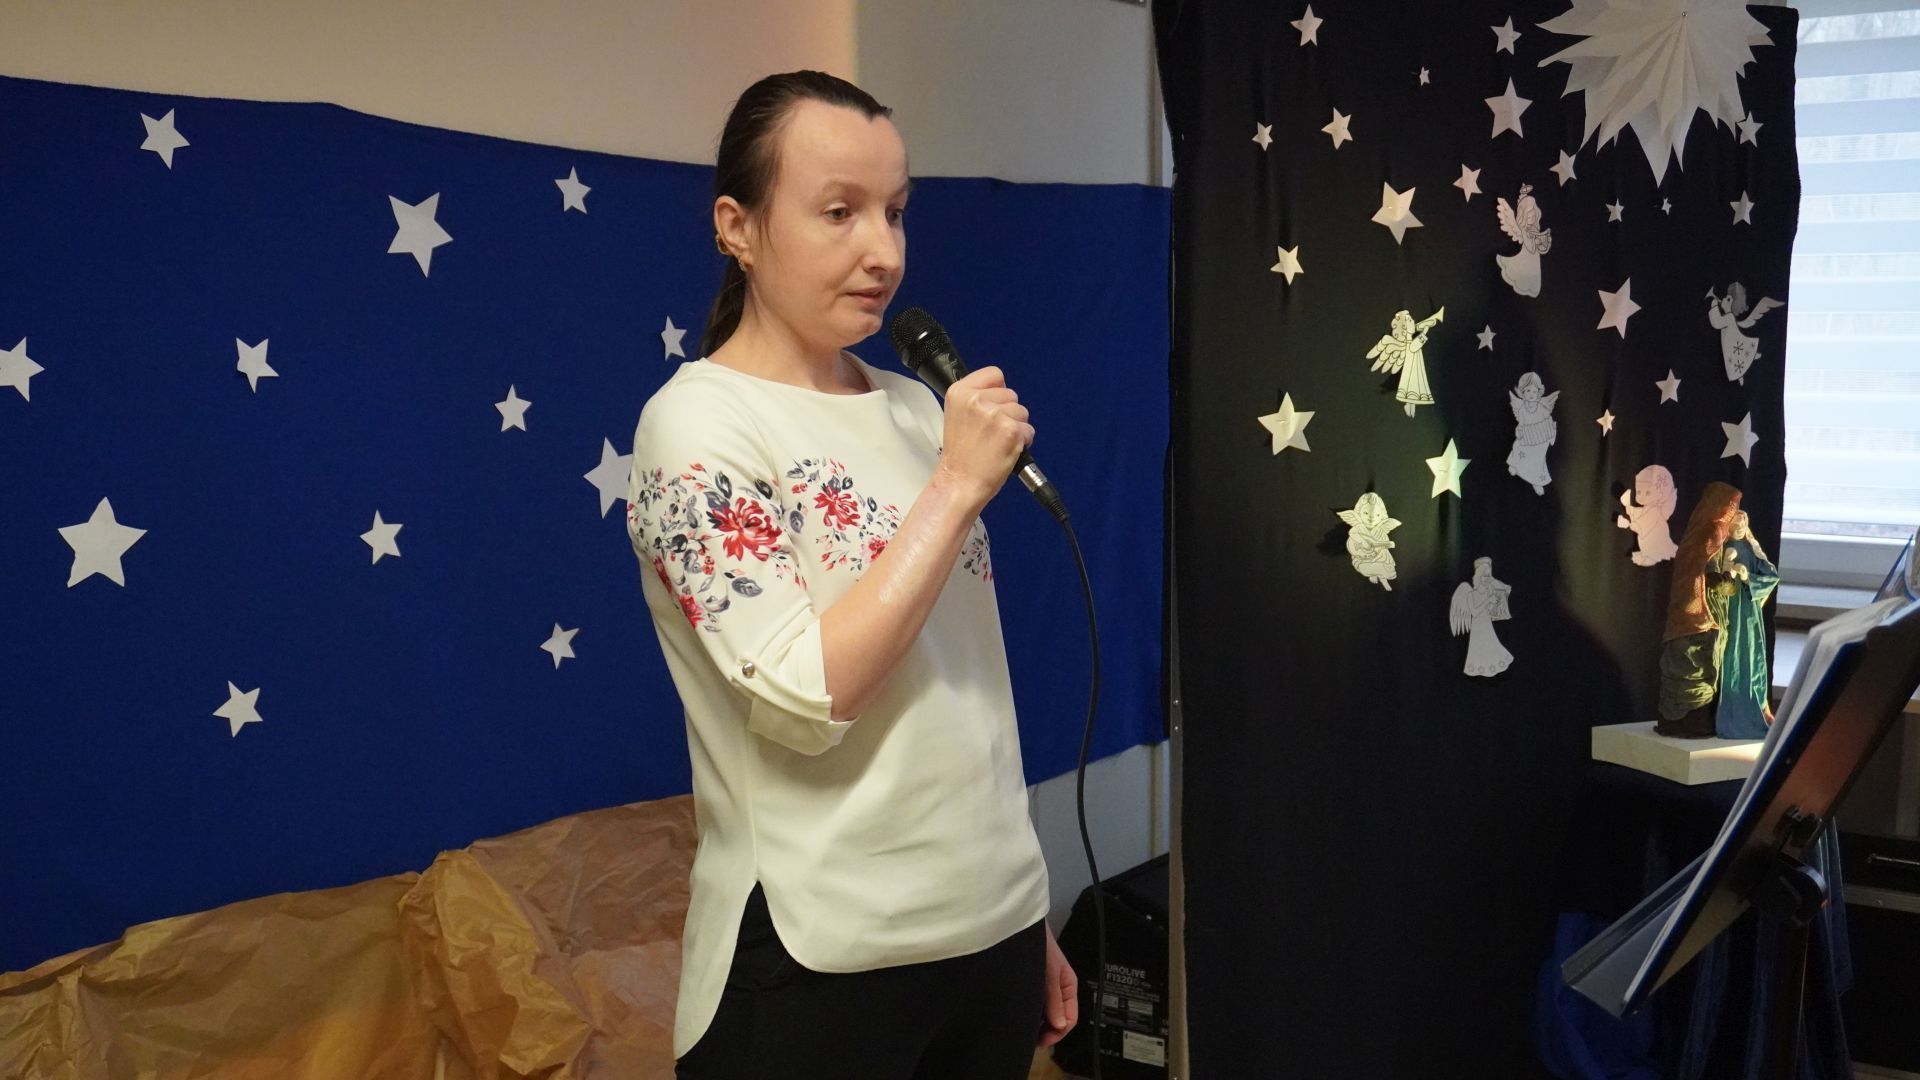 Anna Cz. śpiewa kolędę podczas konkursu kolęd i pastorałek.